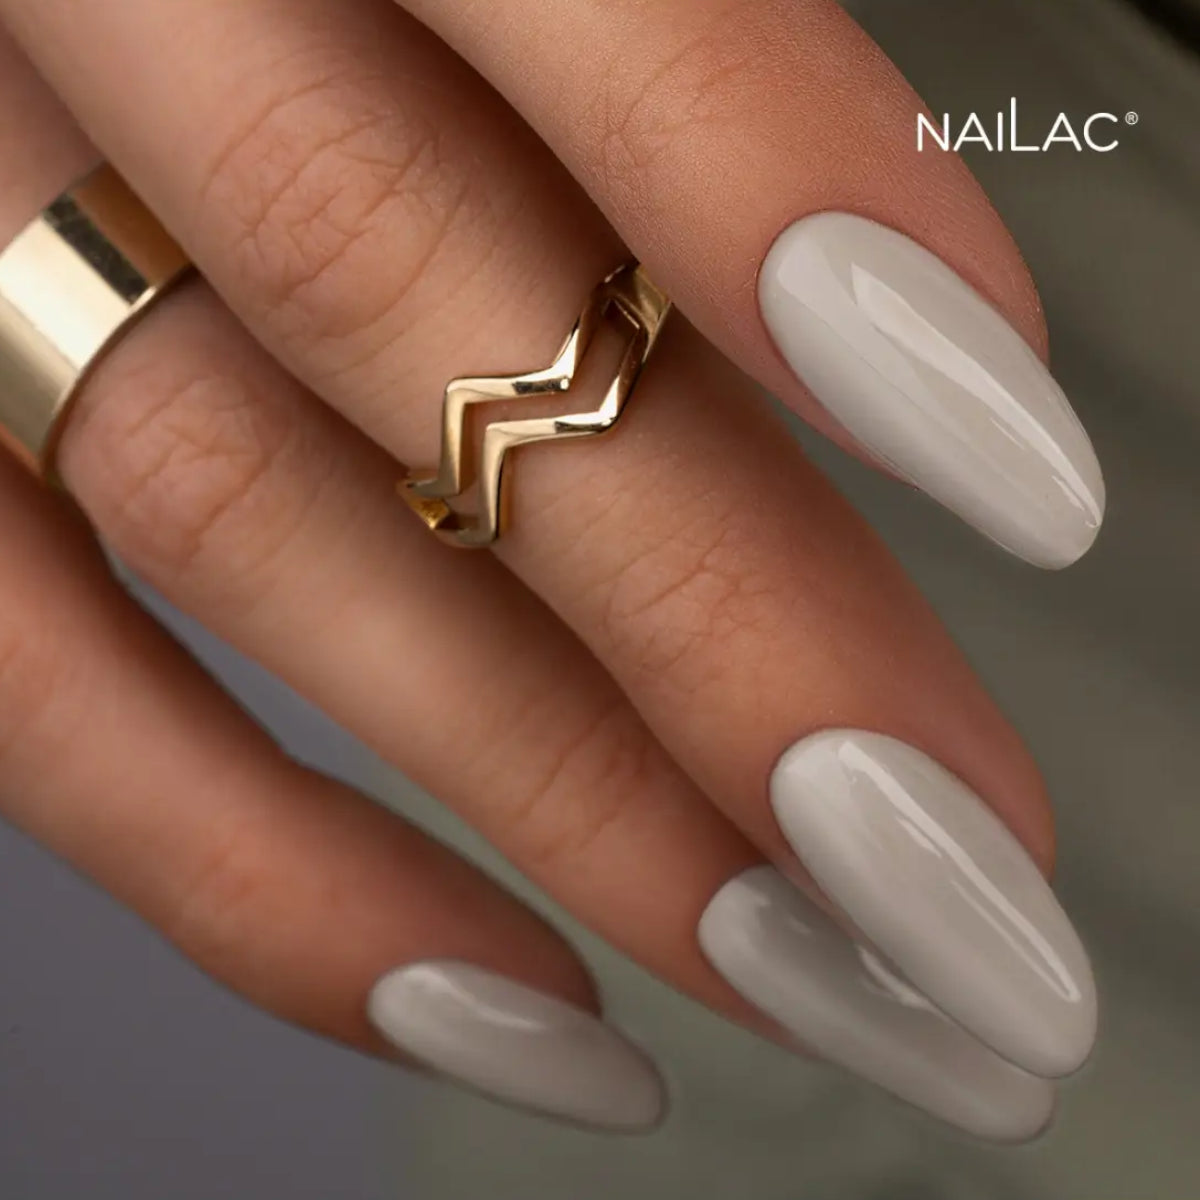 NaiLac UV/LED Gel Nail Polish 488 Nails